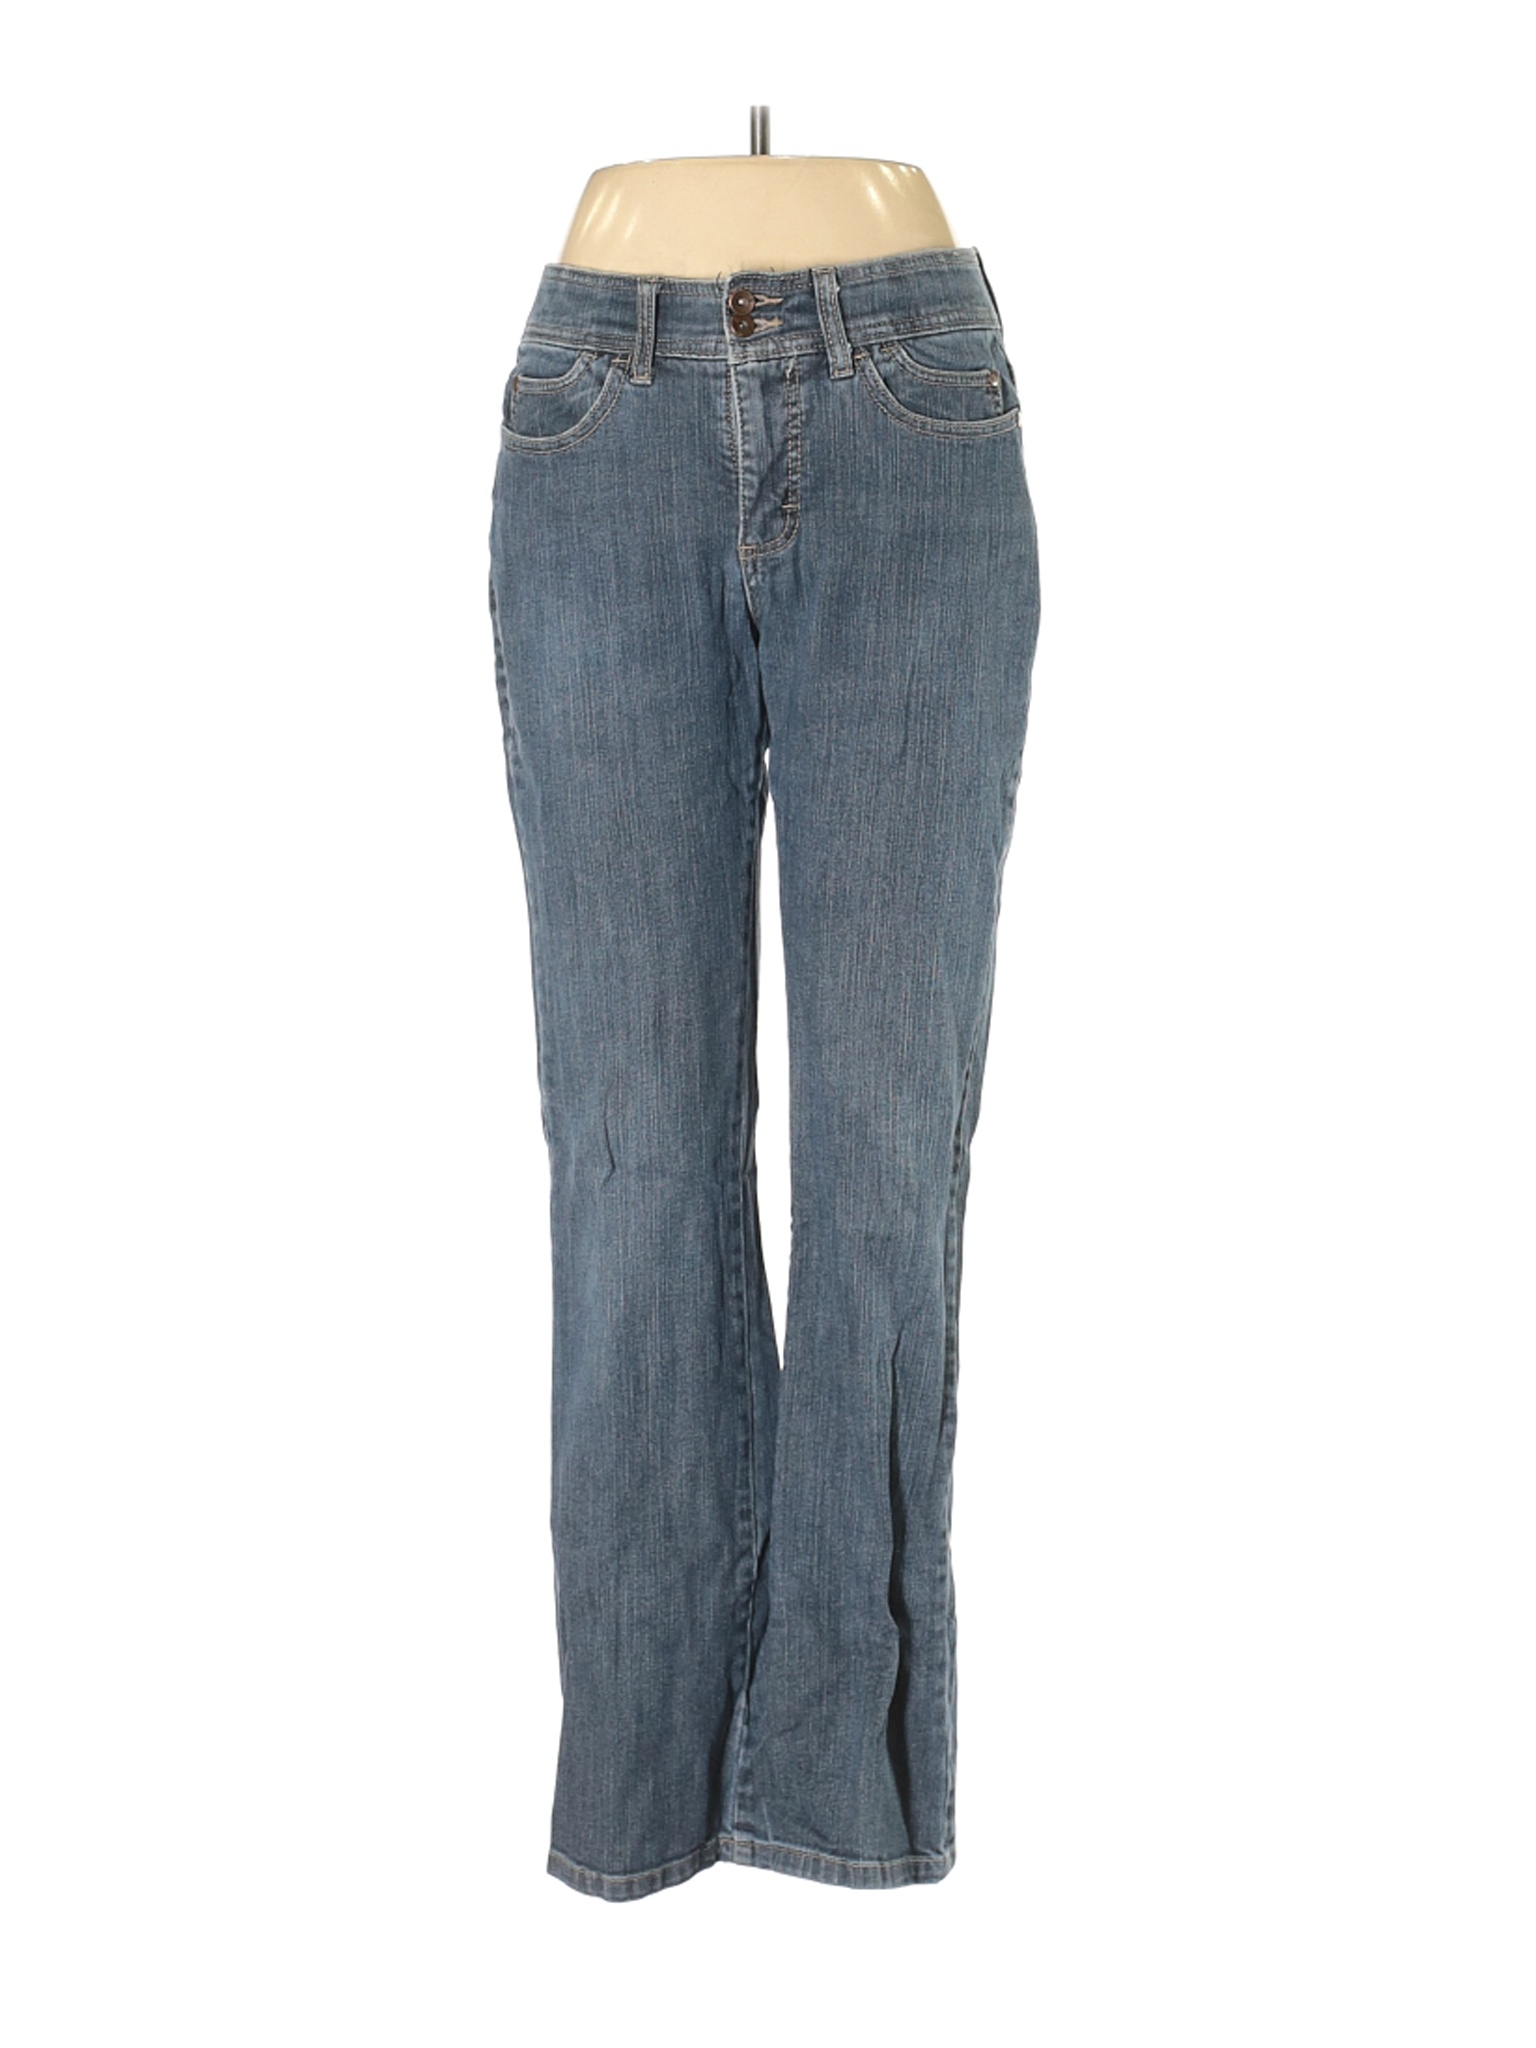 Lee Women Blue Jeans 8 | eBay